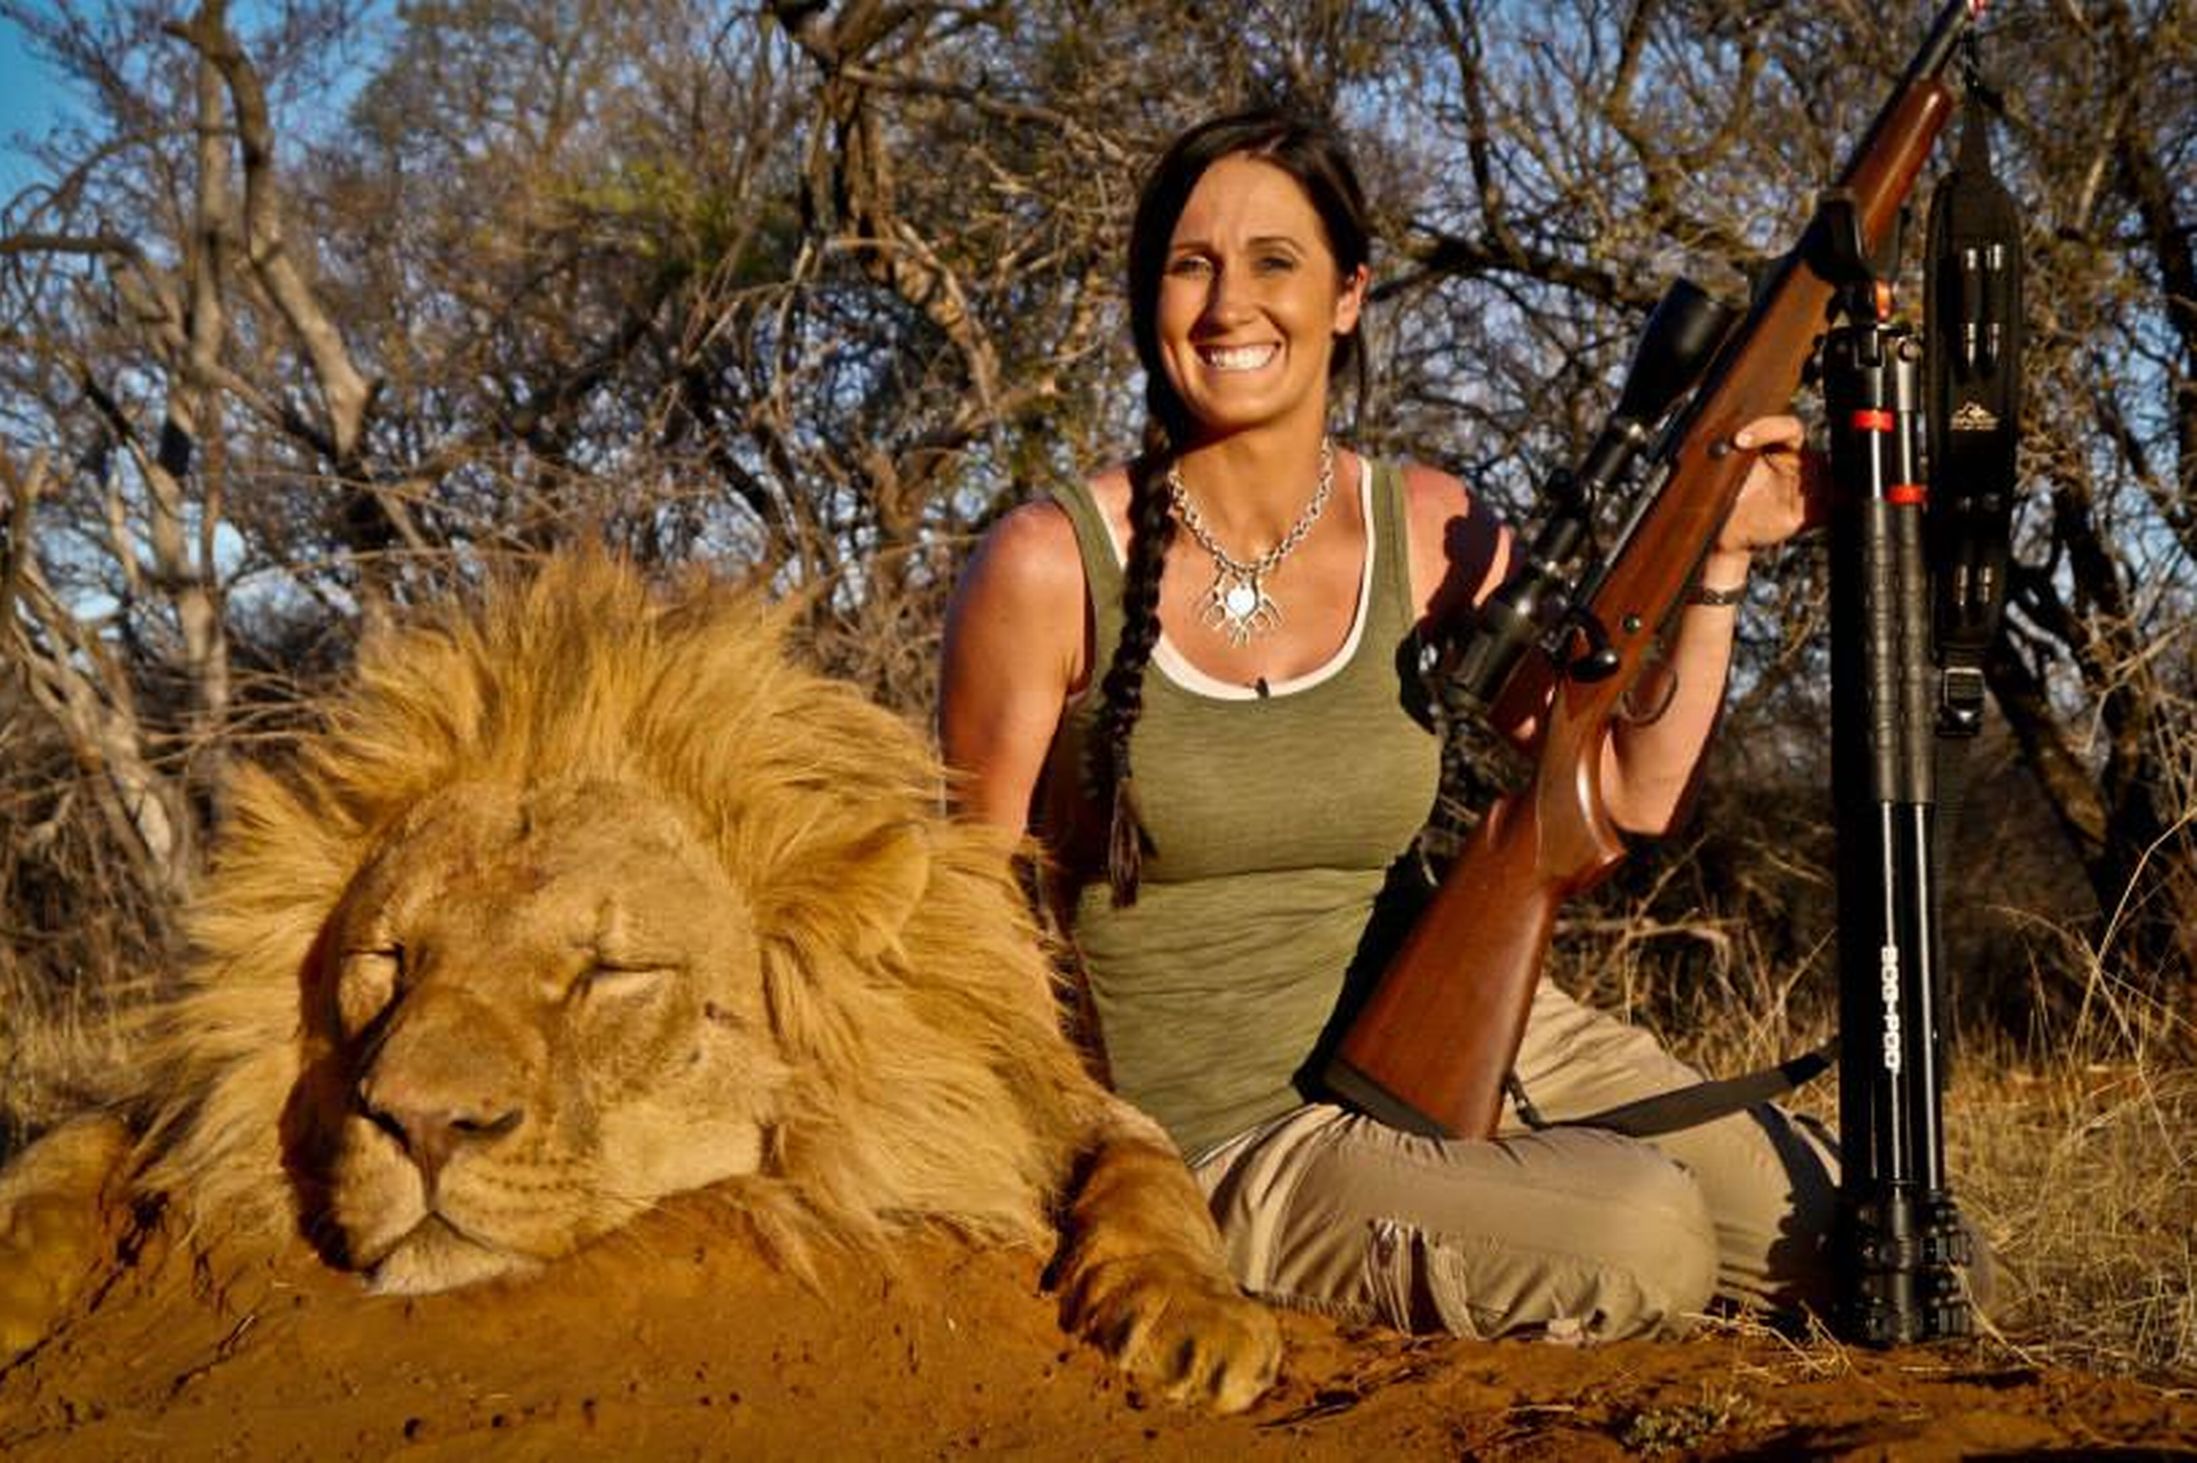 Közbotrány: az általa elejtett afrikai oroszlánnal posztolta ki magát egy amerikai tévés műsorvezető - fotó